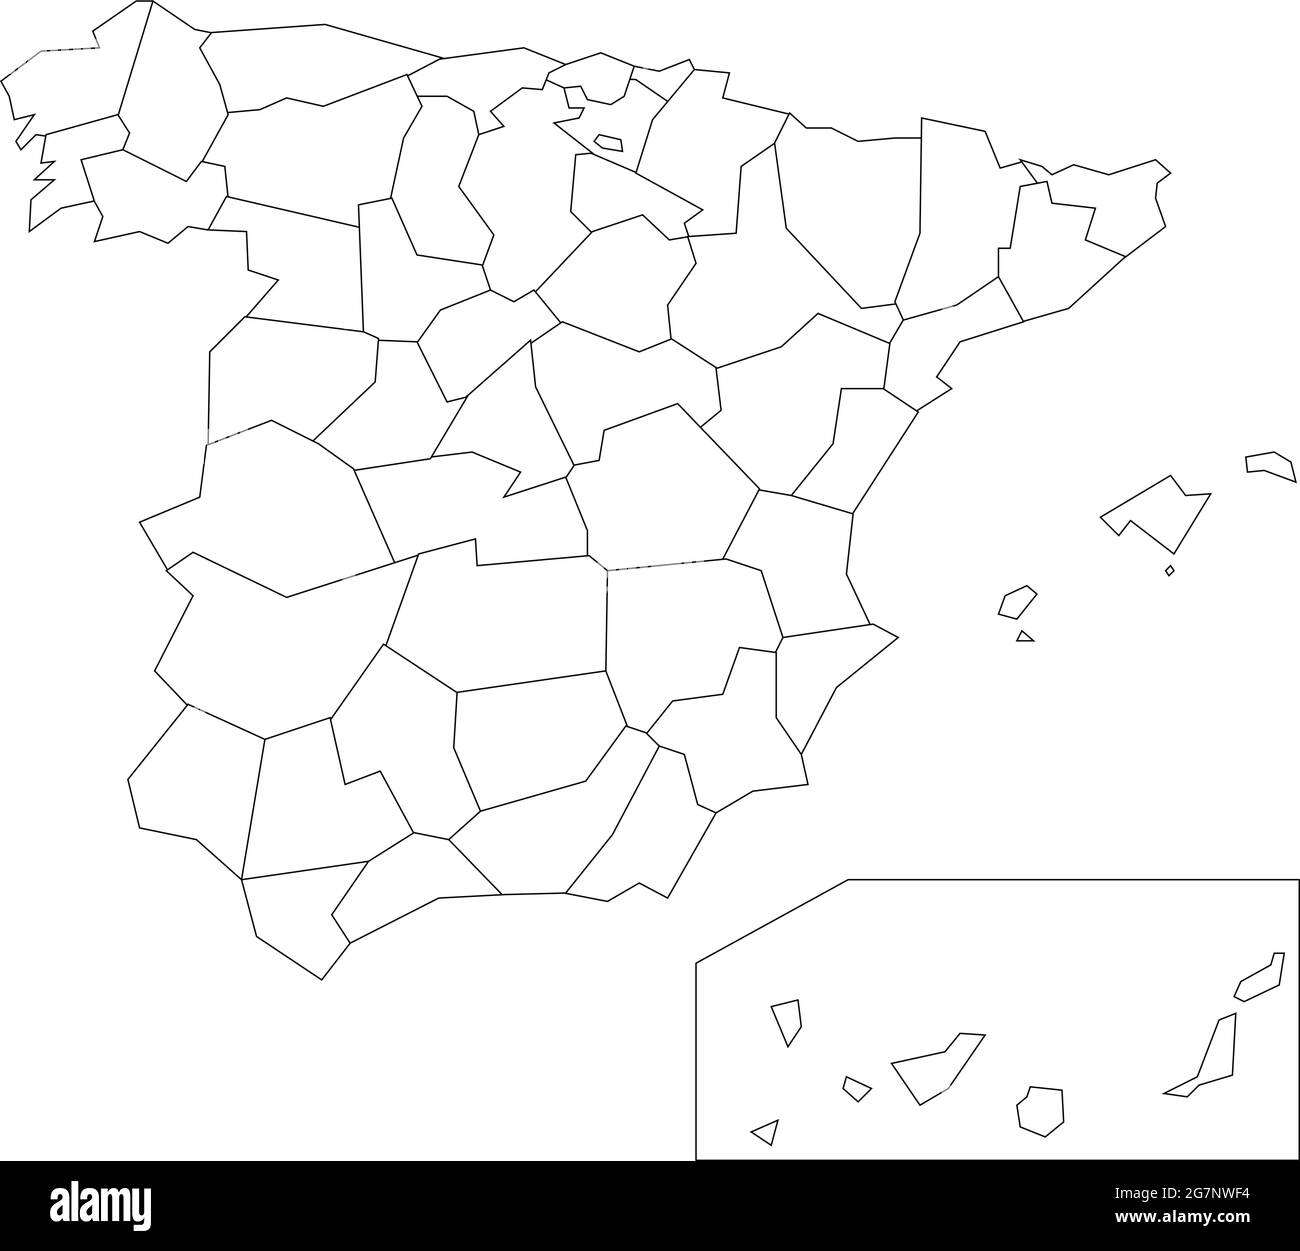 Vektorkarte von Spanien, um farblos mit Umriss zu studieren Stock Vektor